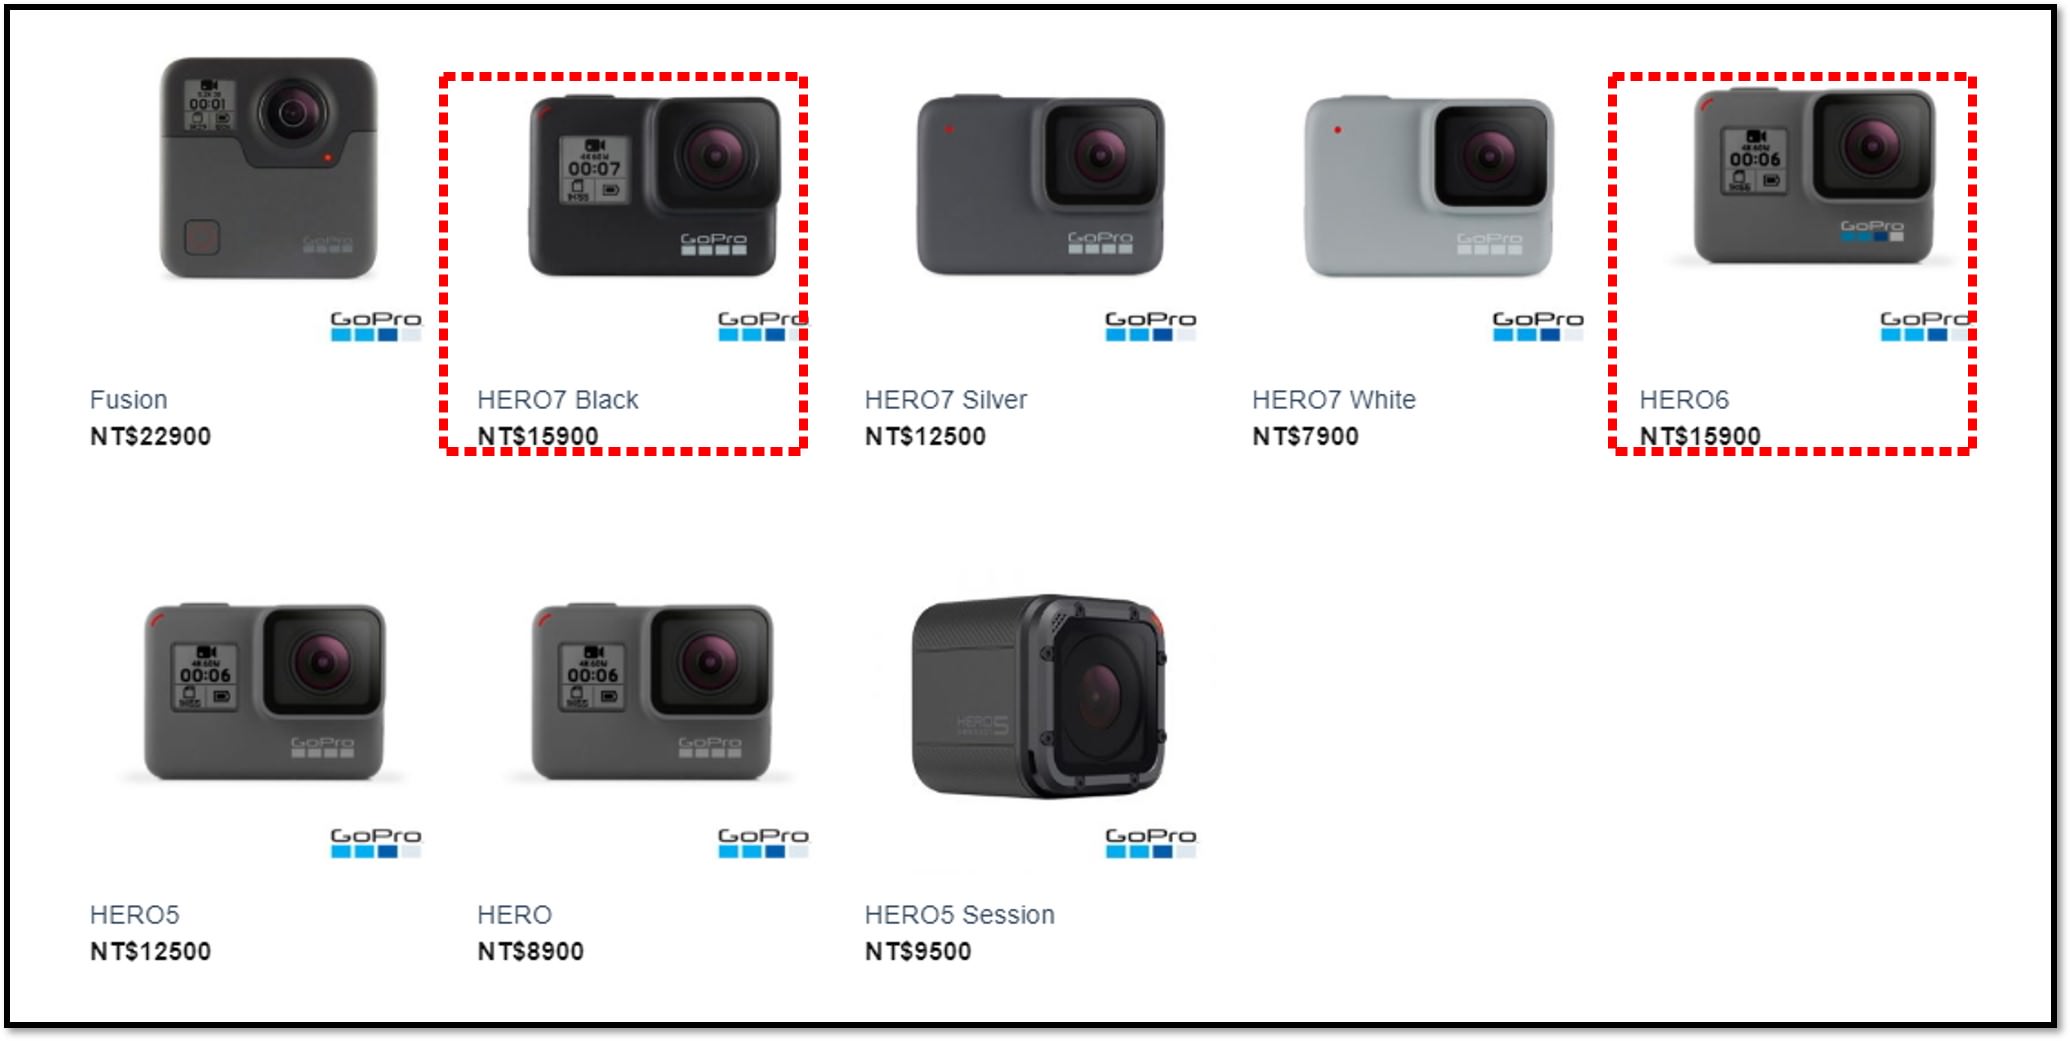 三個不推薦購買 GoPro HERO 6 理由，3C數位生活文章投稿通過鹿talk社 最高可獲得3000元超商禮券